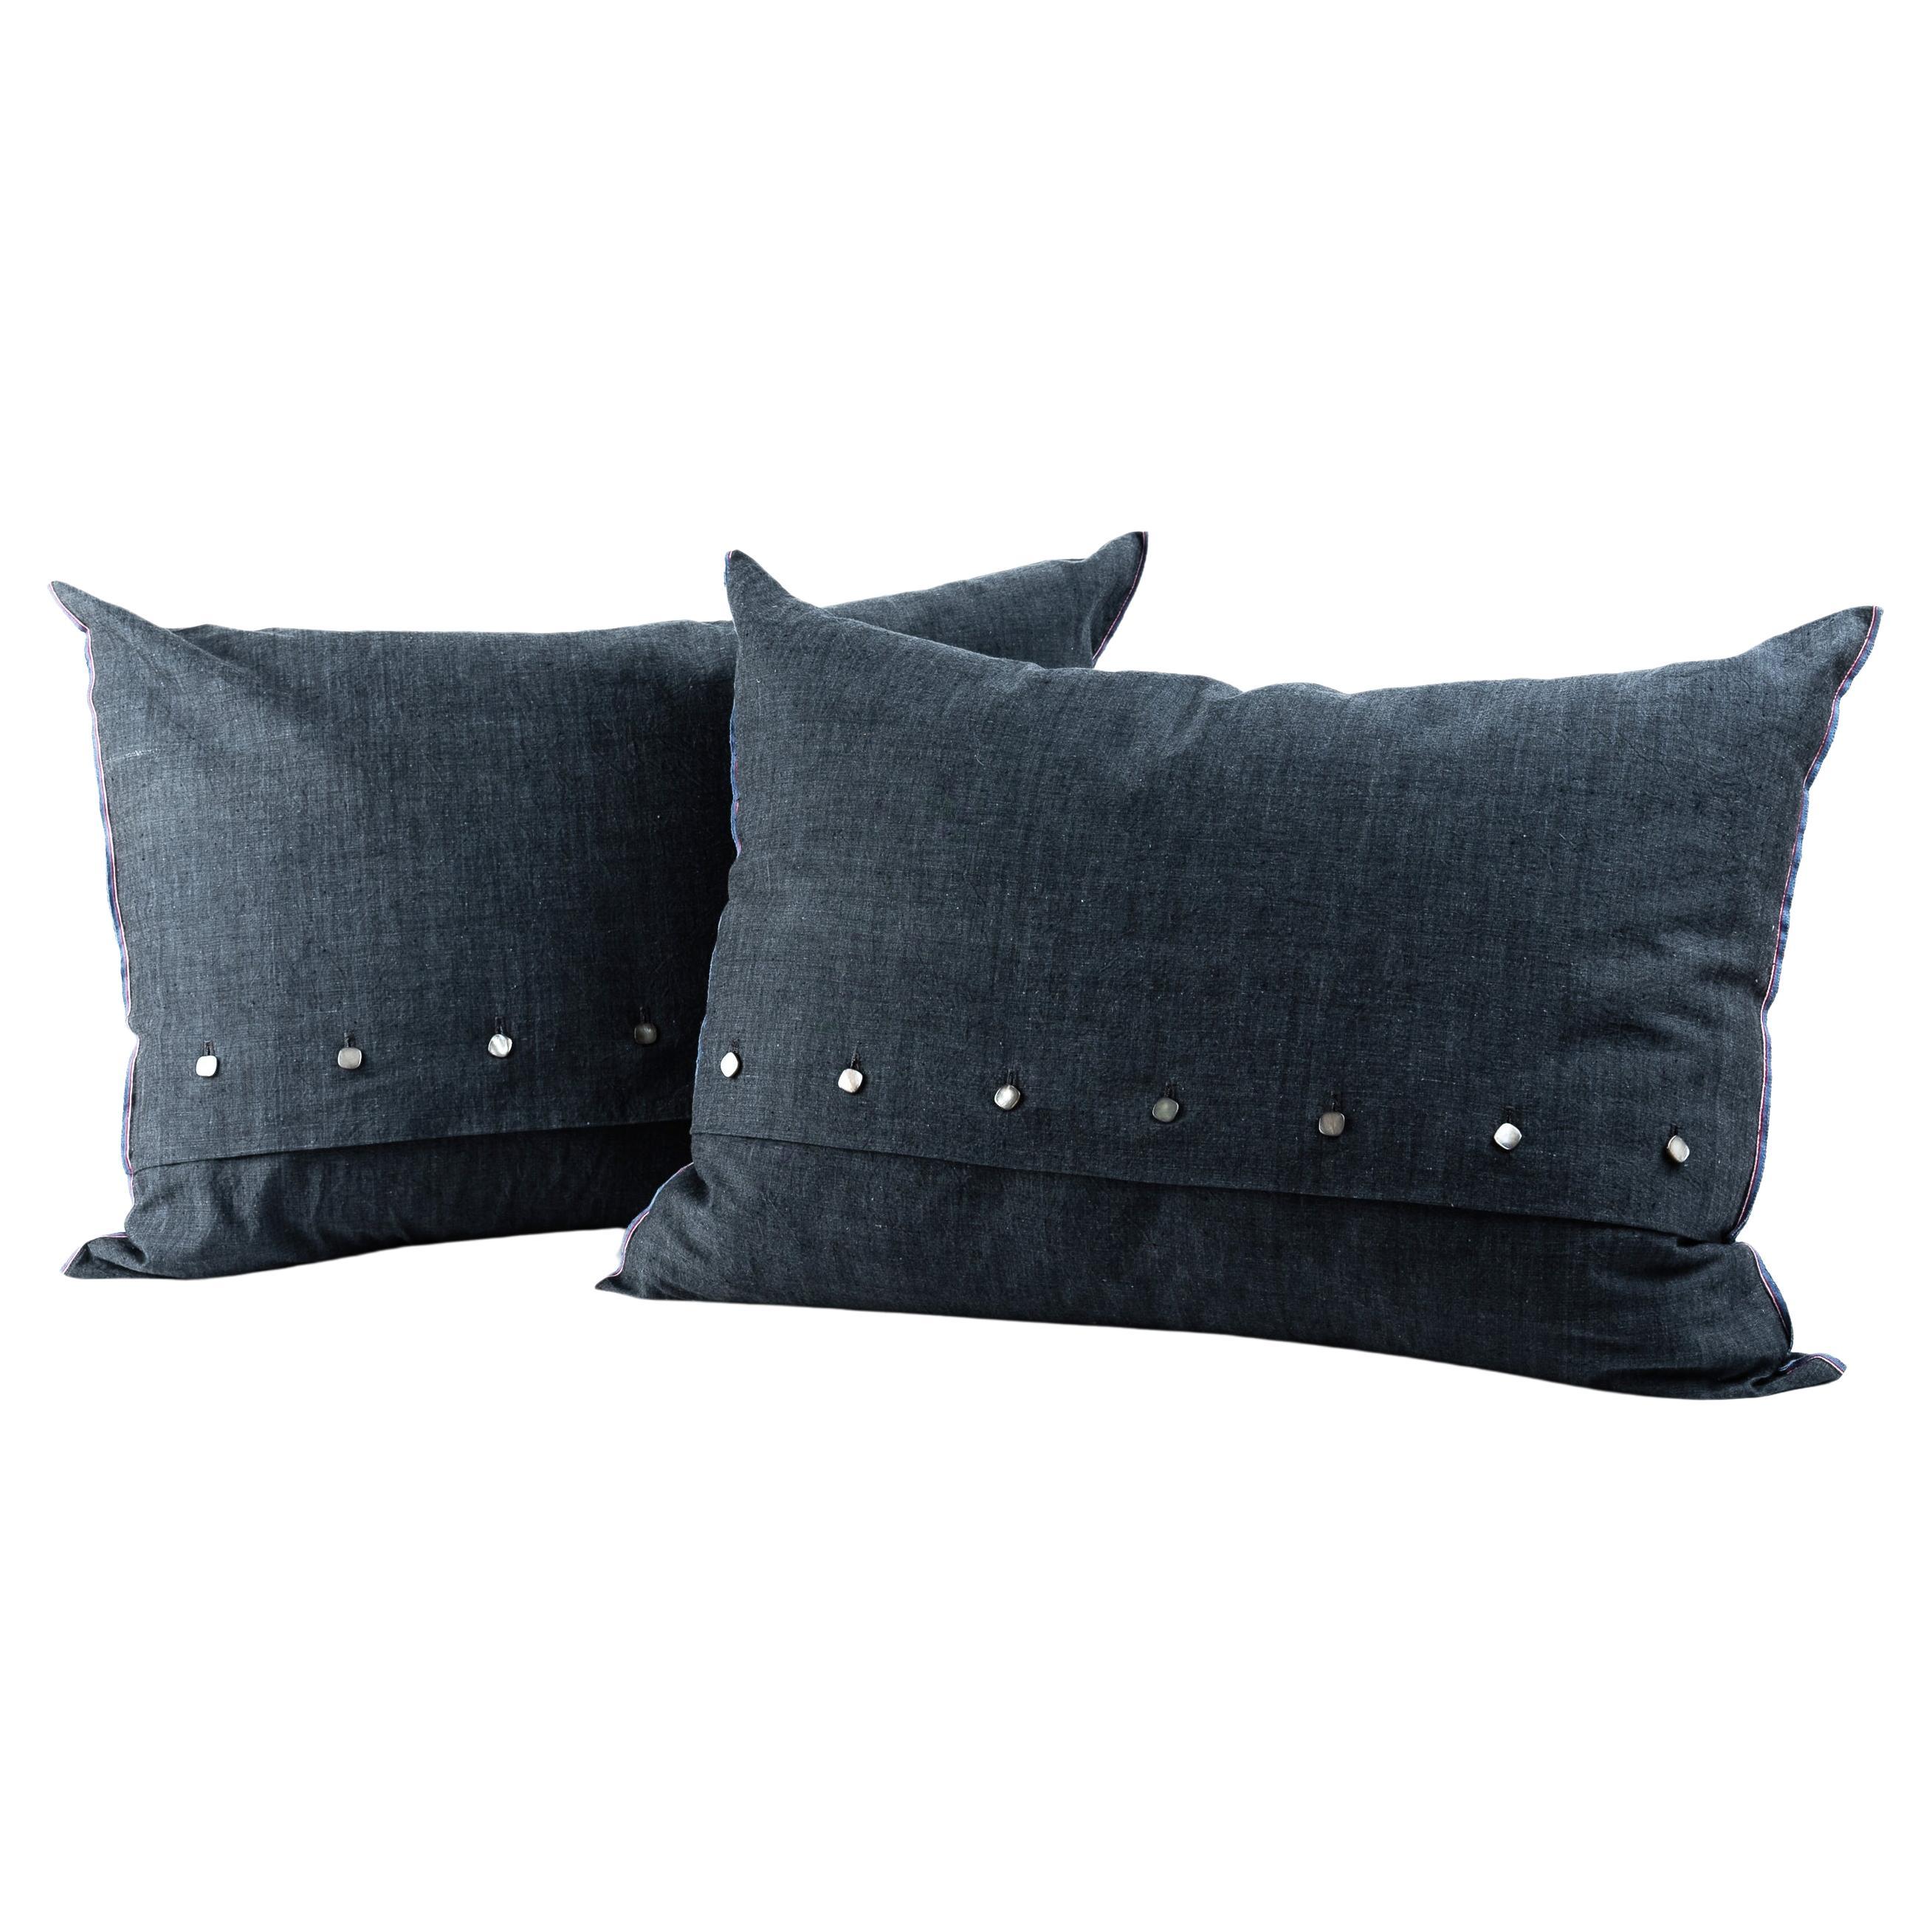 Pair of Bed Pillows in Spanish Vintage Dark Grey Poplin 100% Cotton